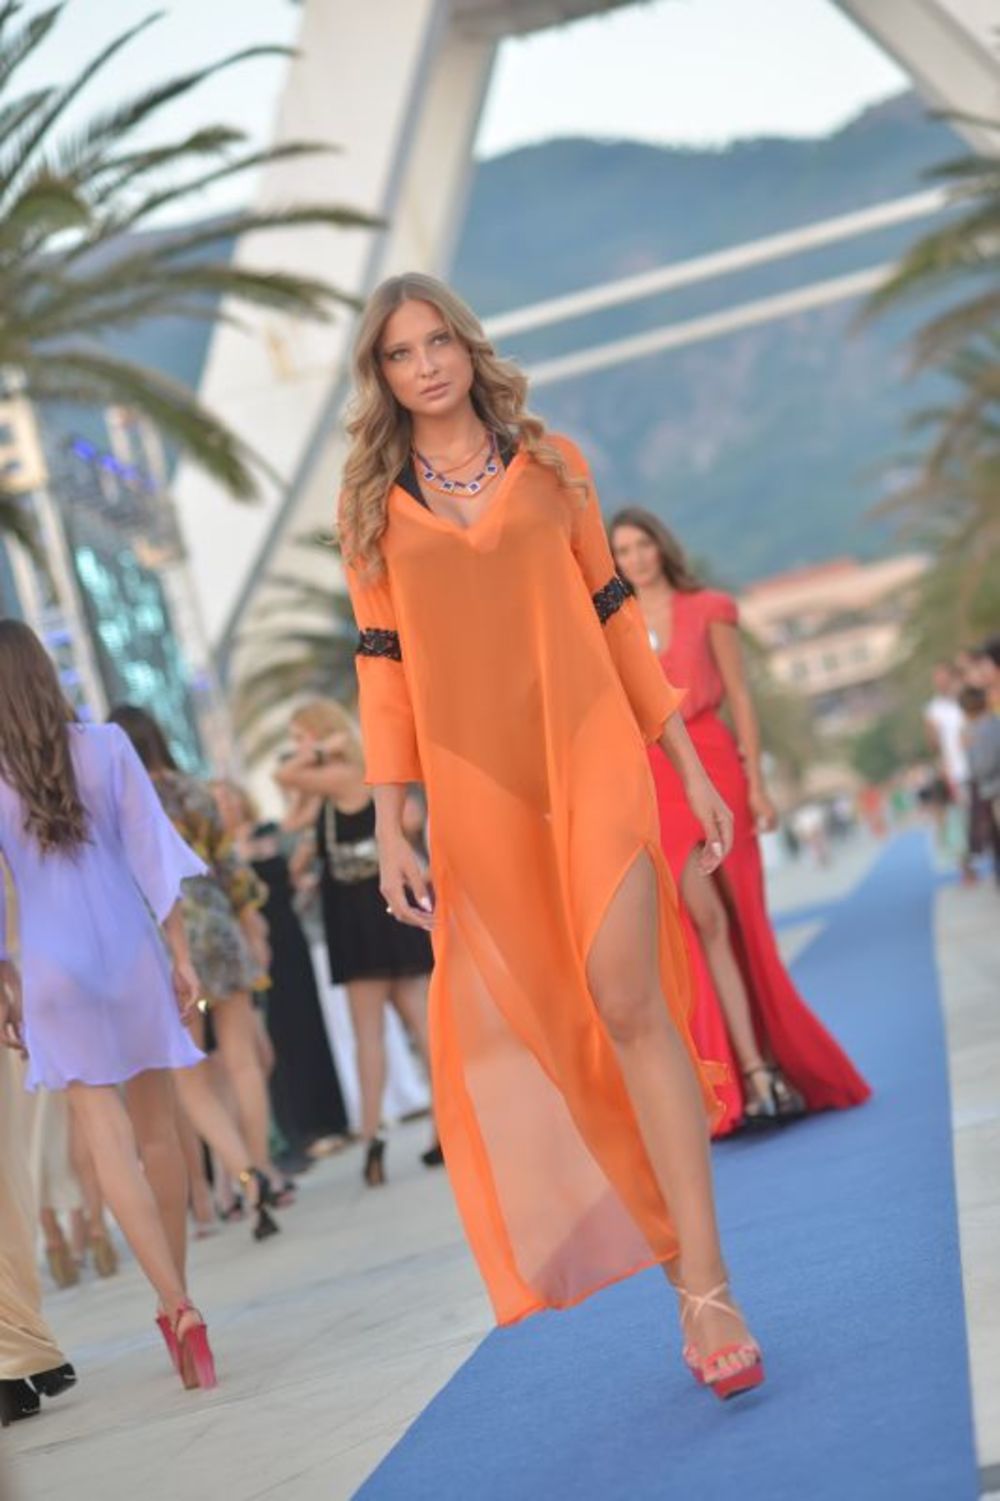 U luksuznom ambijentu crnogorskog Porto Montenegra predstavljena je nova kolekcija luksuznog nakita Misahara, a modeli su nosili haljine Biljane Tipsarević. Ceo performans bio je organizovan u znaku tajnog agenta 007,  a na reviji koju su upriličili Biljana i